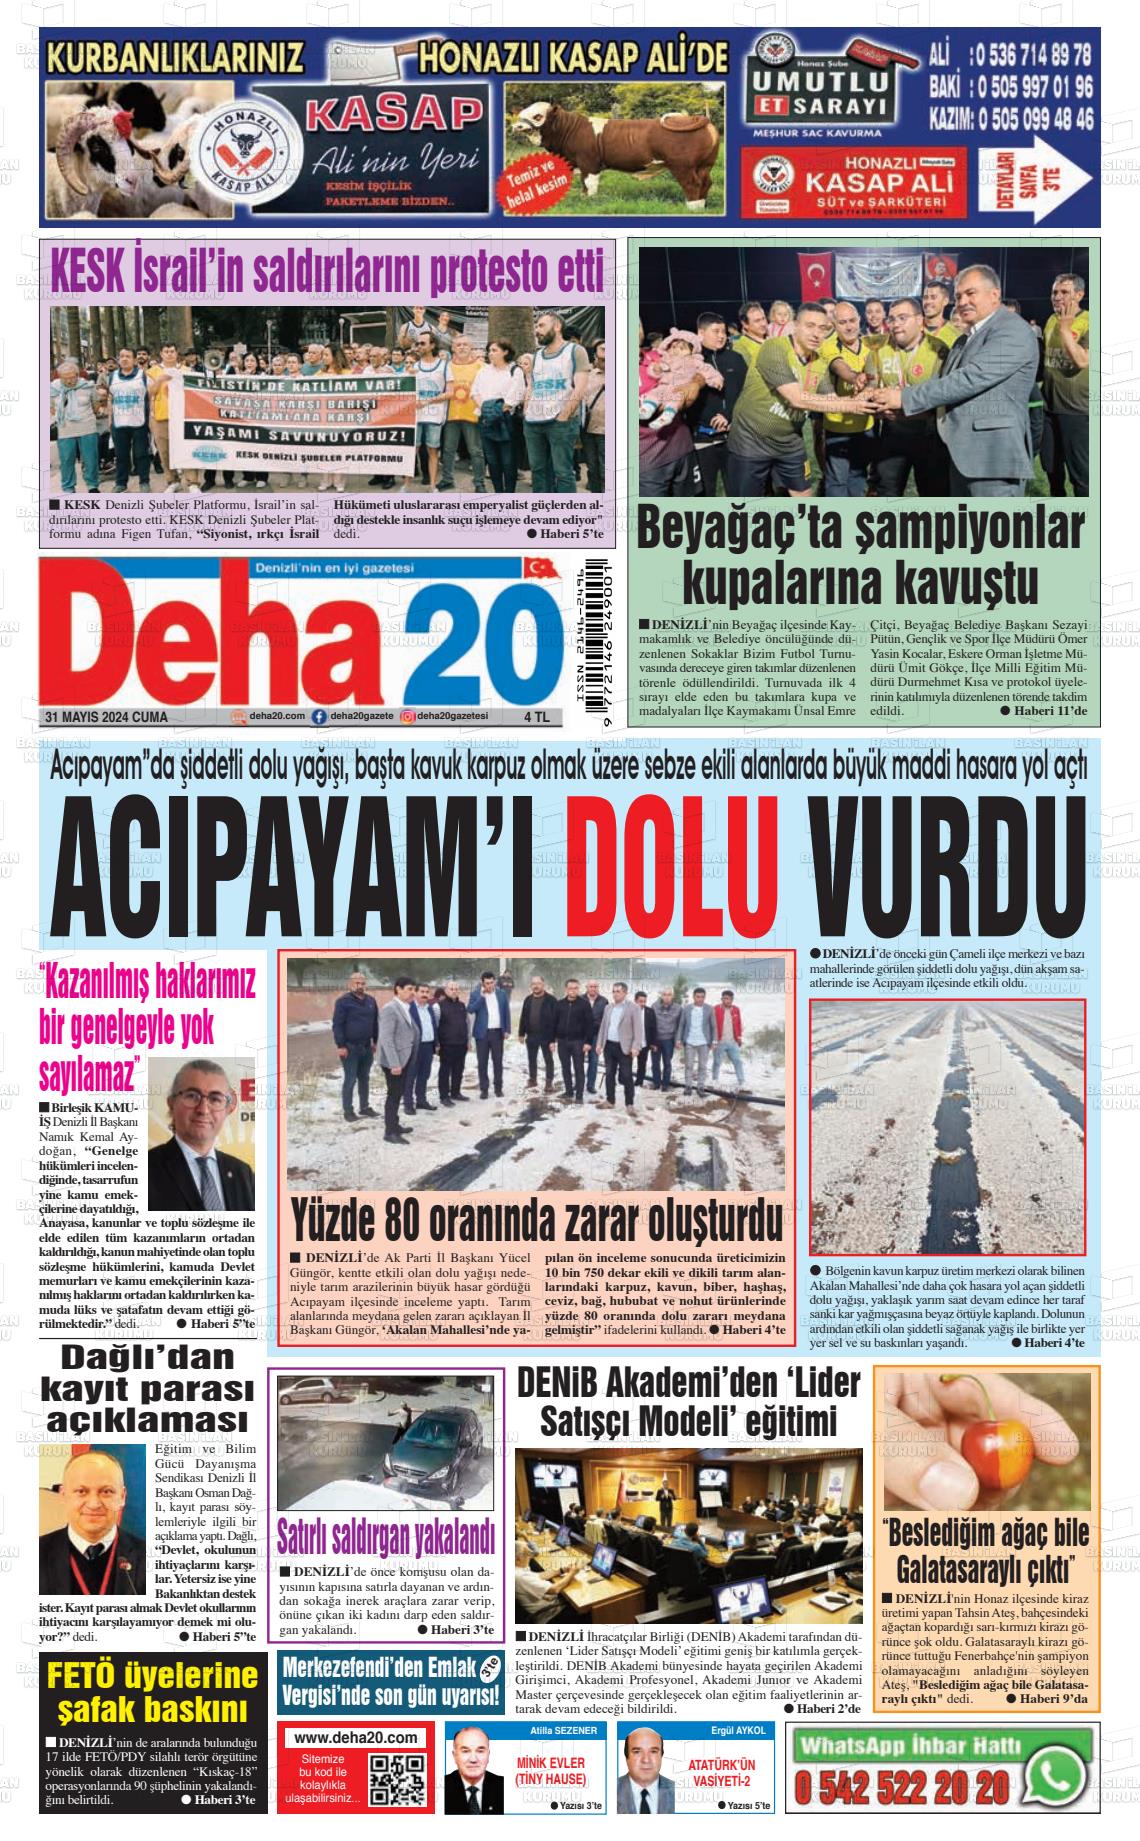 DEHA 20 Gazetesi